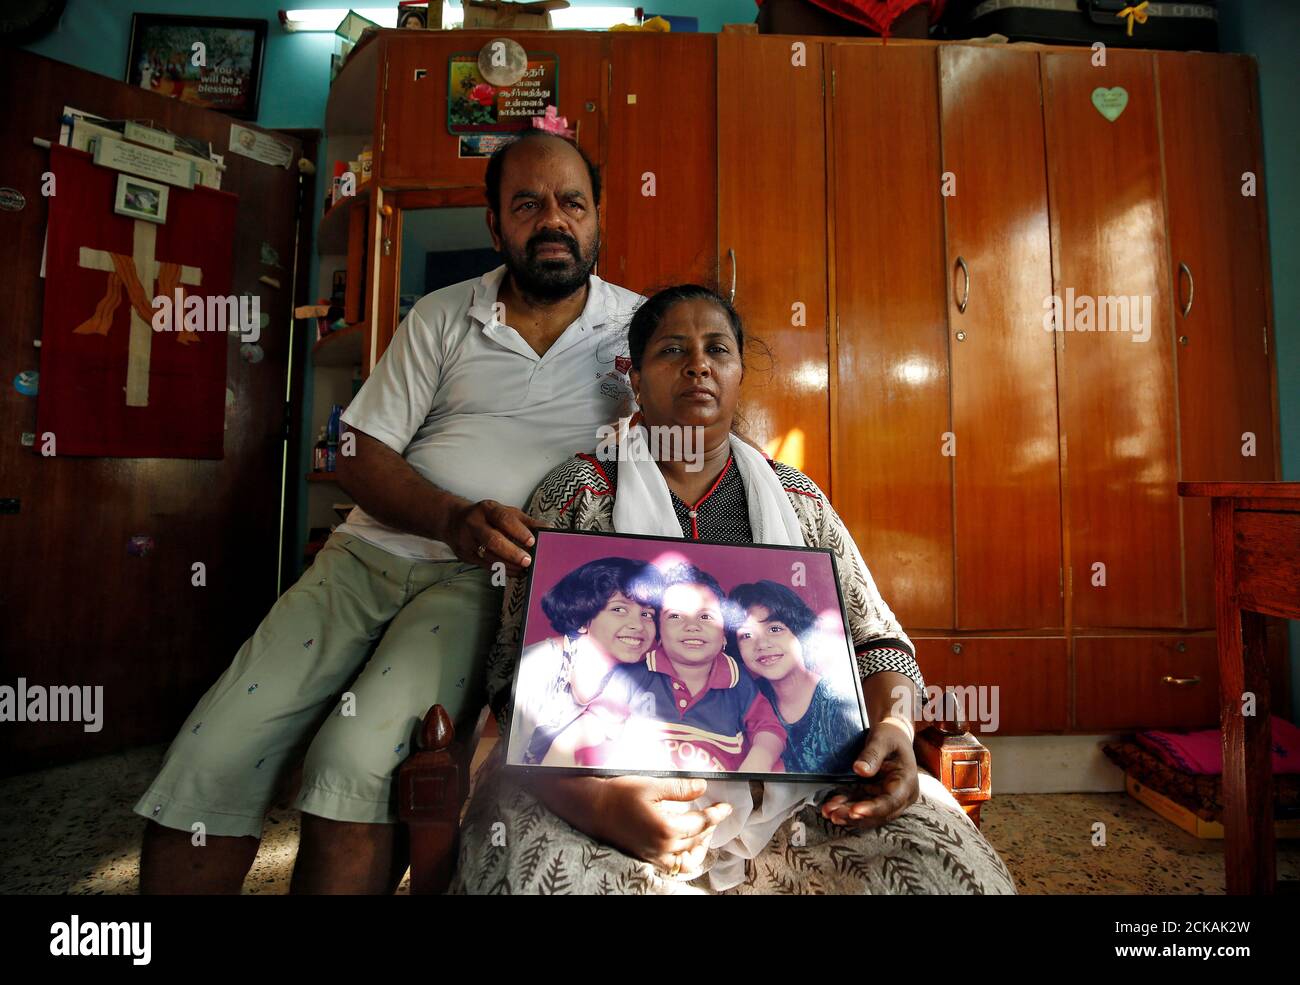 Karibeeran Paramesvaran y su esposa Choodamani, que habían perdido a tres hijos en el tsunami de 2004, posan con una fotografía que muestra a sus hijos dentro de su casa que se han convertido en un hogar de cuidado para niños huérfanos en el distrito de Nagapattinam, en el estado sureño de Tamil Nadu, India, el 4 de diciembre de 2019. Foto tomada el 4 de diciembre de 2019. REUTERS/P. Ravikumar Foto de stock